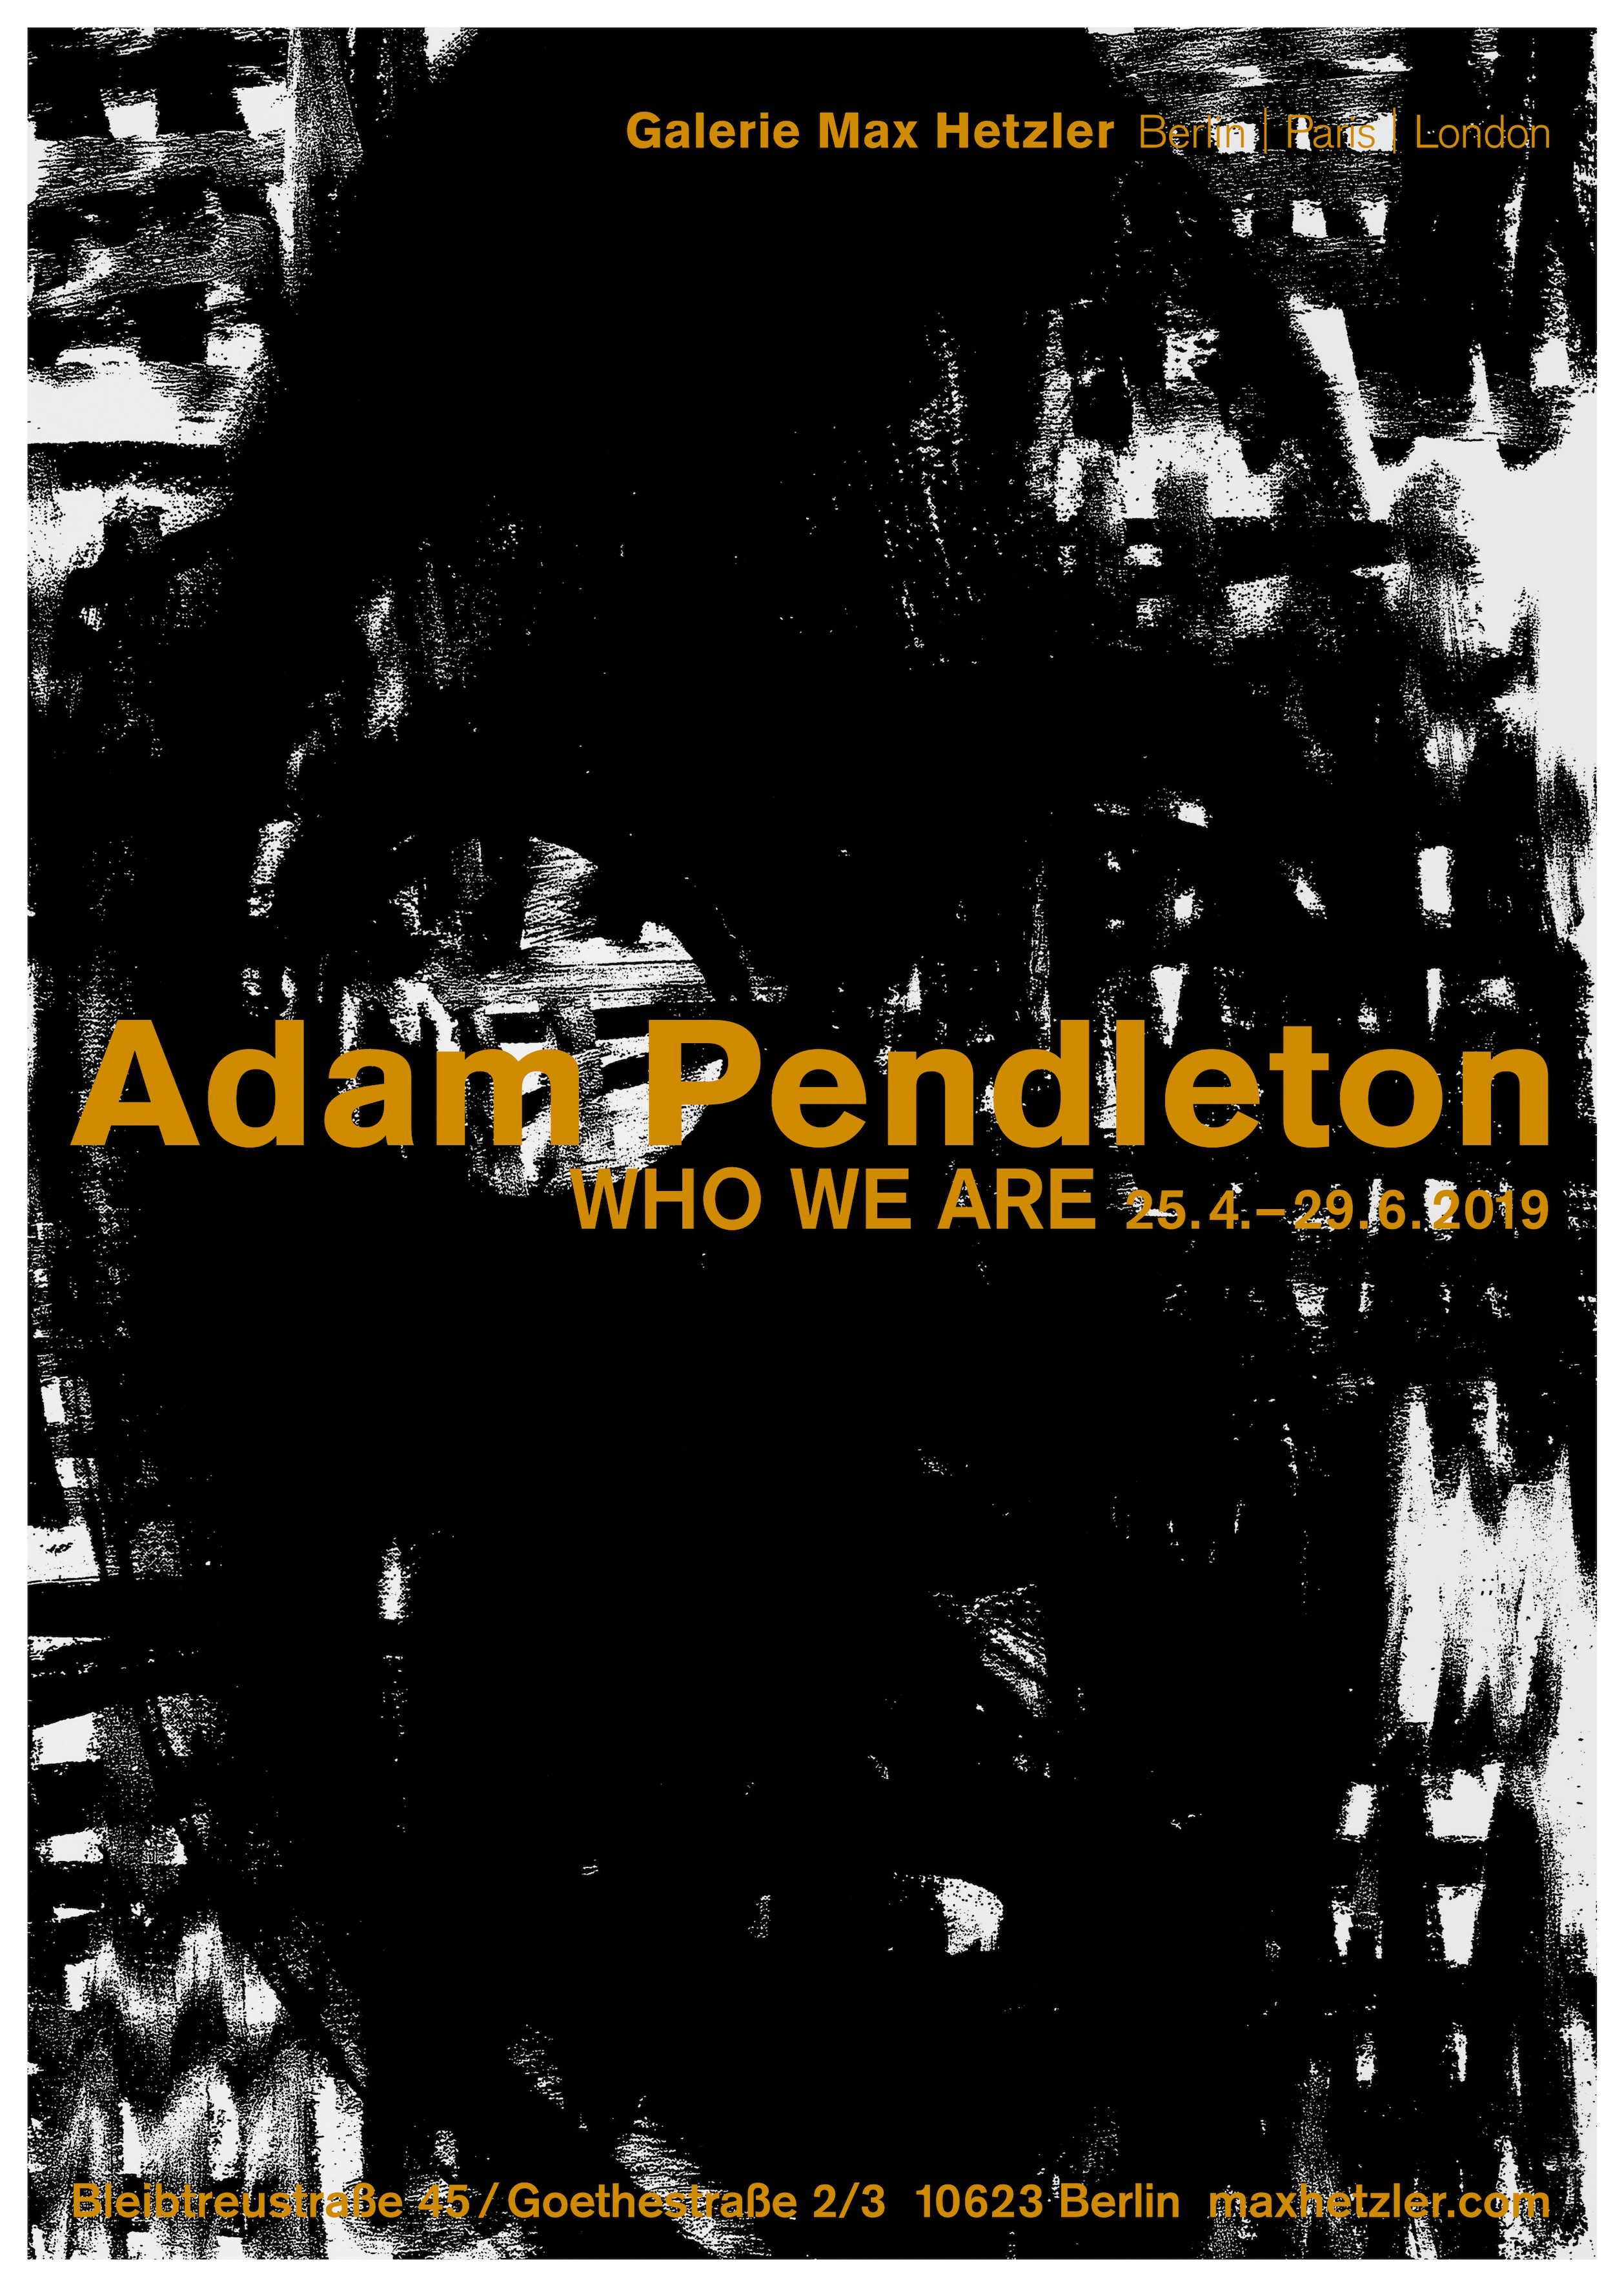 Adam Pendleton, Who We Are - Galerie Max Hetzler